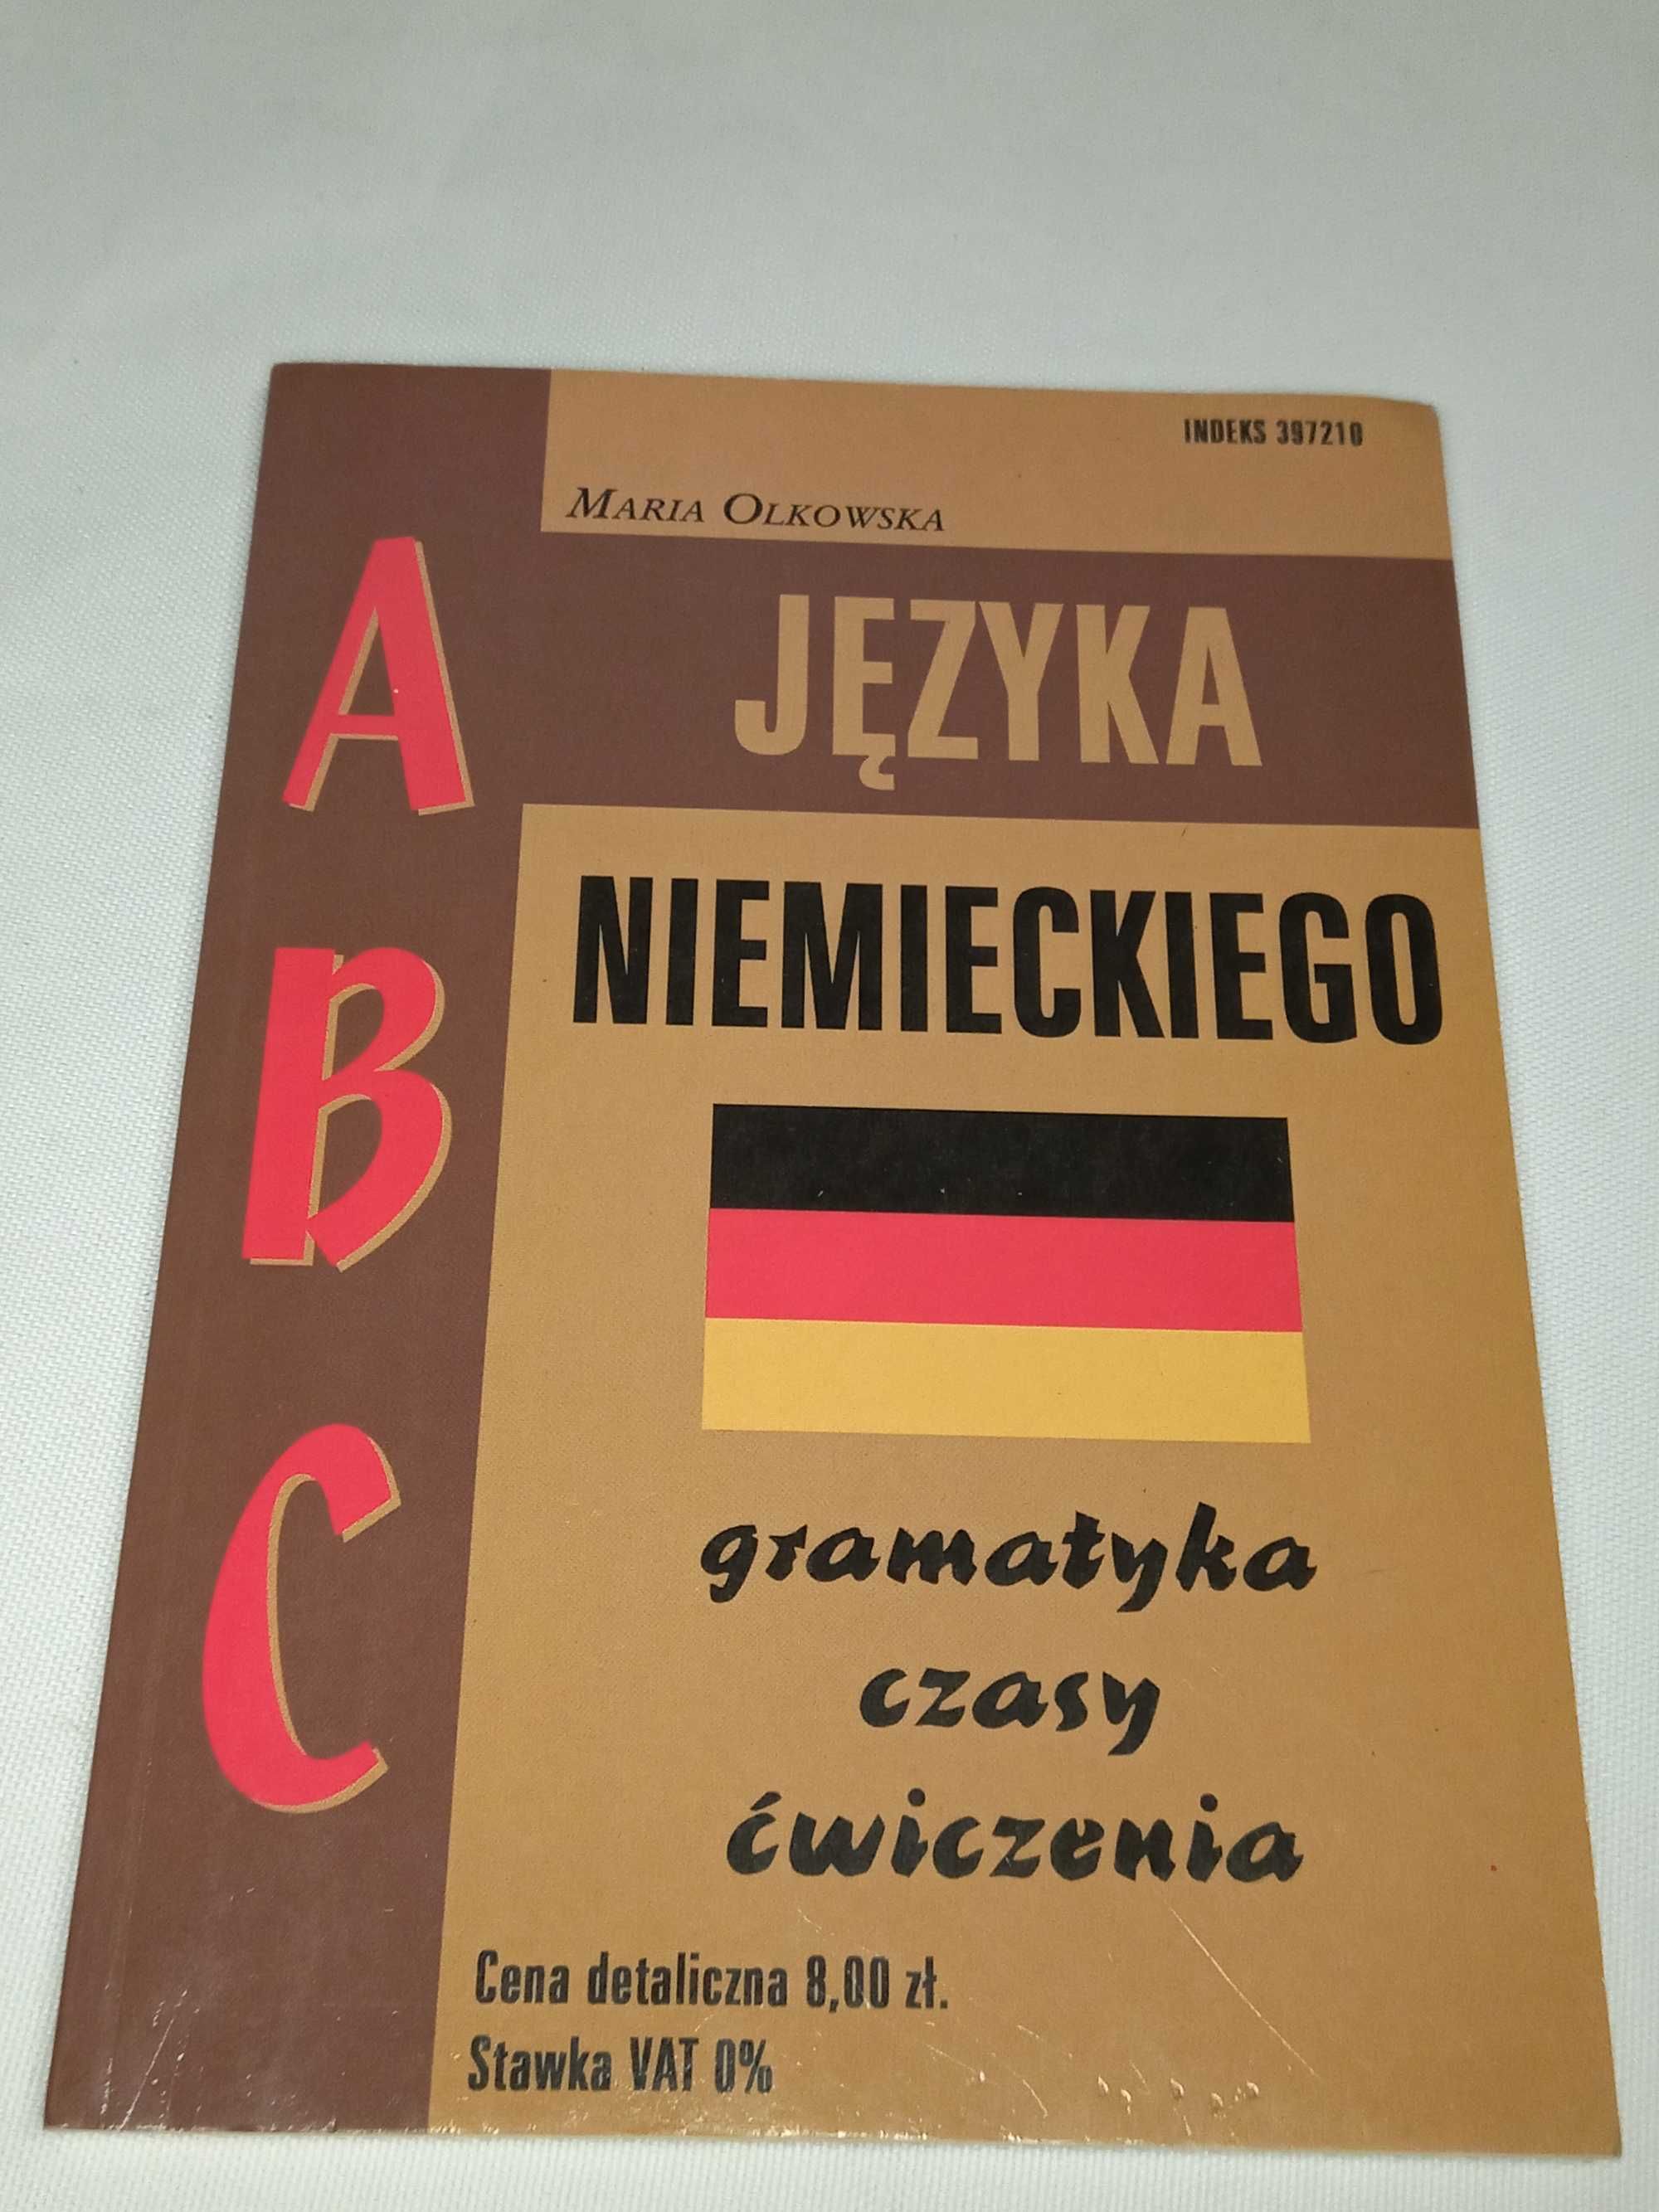 ABC Języka Niemieckiego - Gramatyka, czasy, ćwiczenia - Maria Olkowska